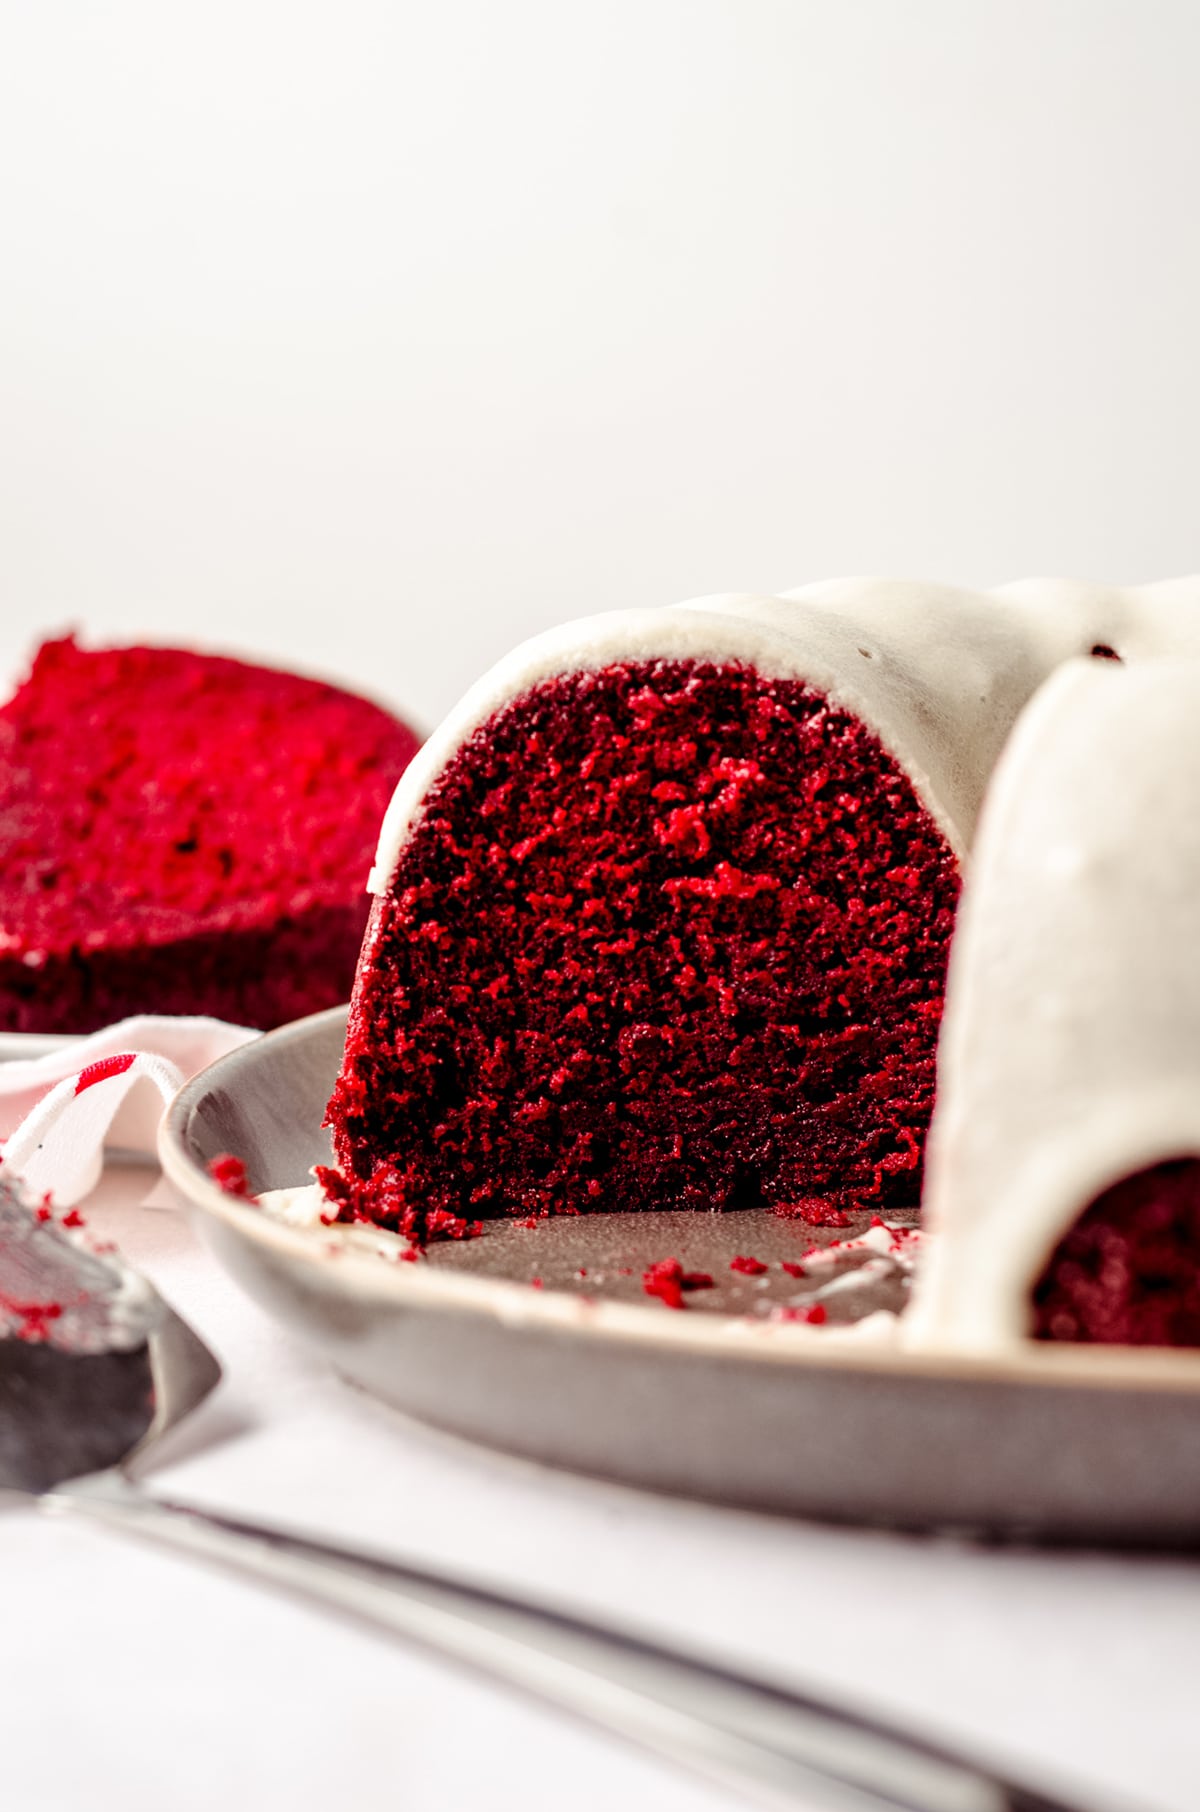 red velvet bundt cake on a plate